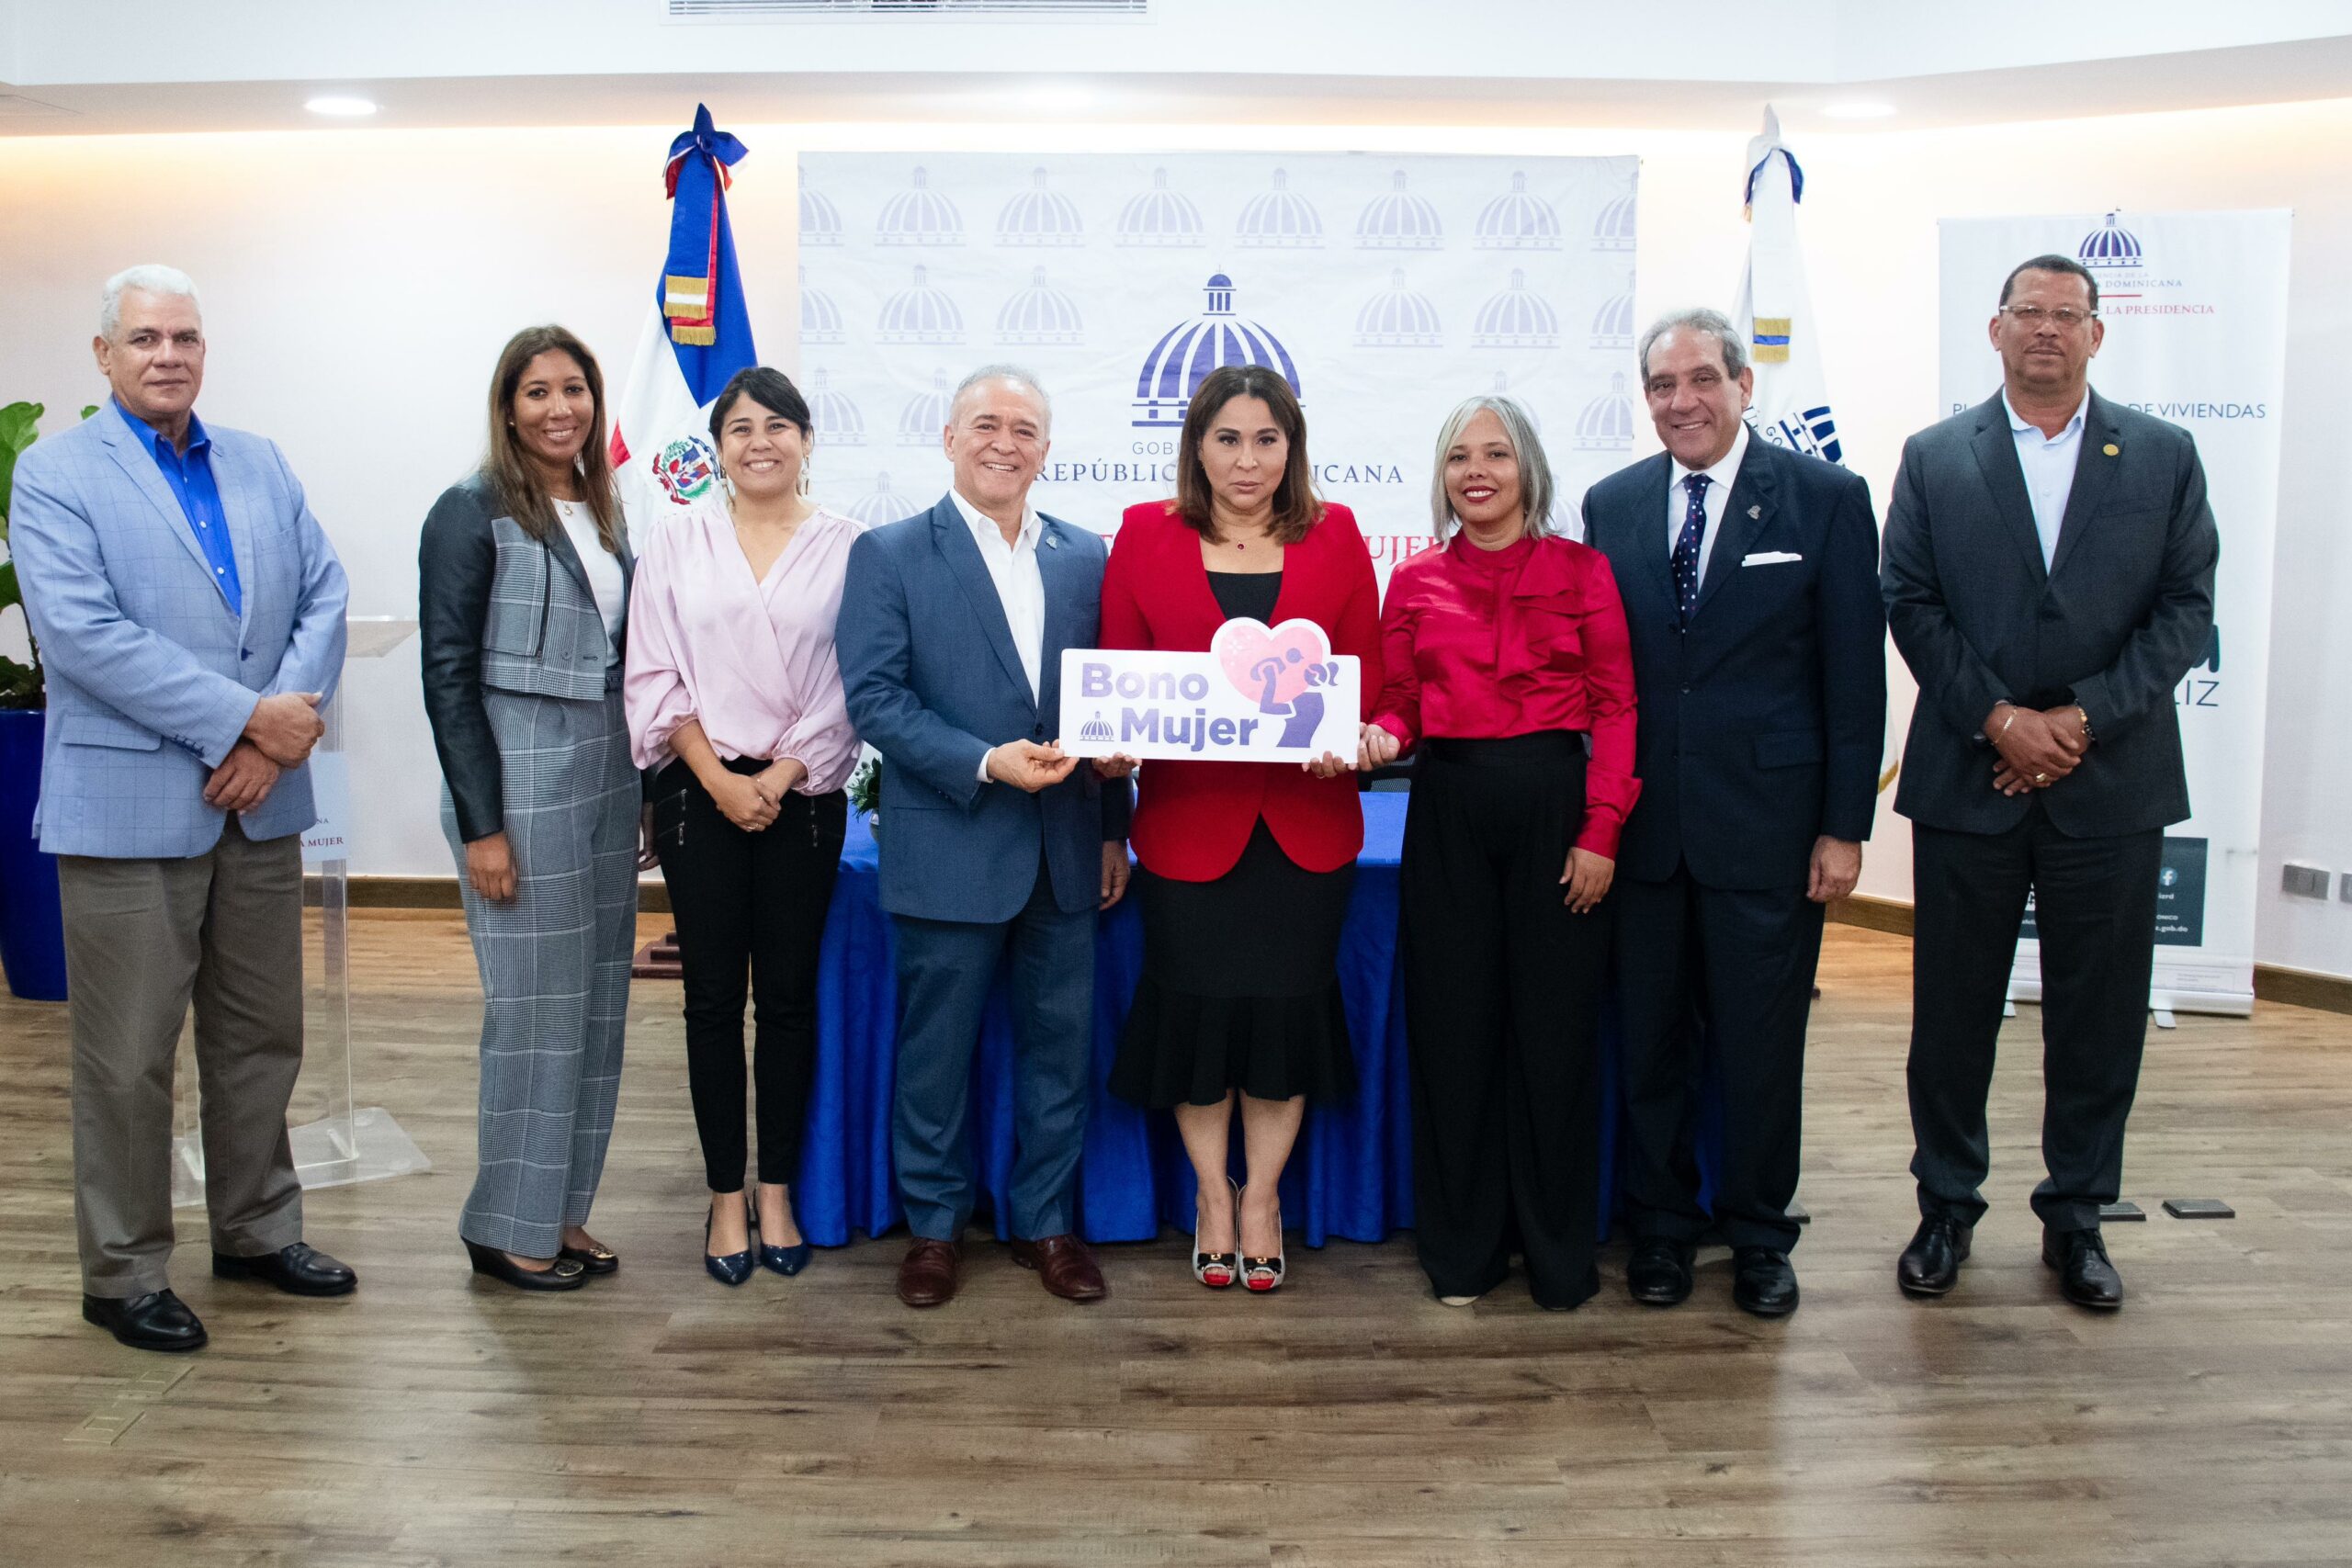 Gobierno aumenta a RD$7.0 millones el Bono Mujer para beneficiarias del Plan Familia Feliz del residencial Don Antonio, en San Cristóbal